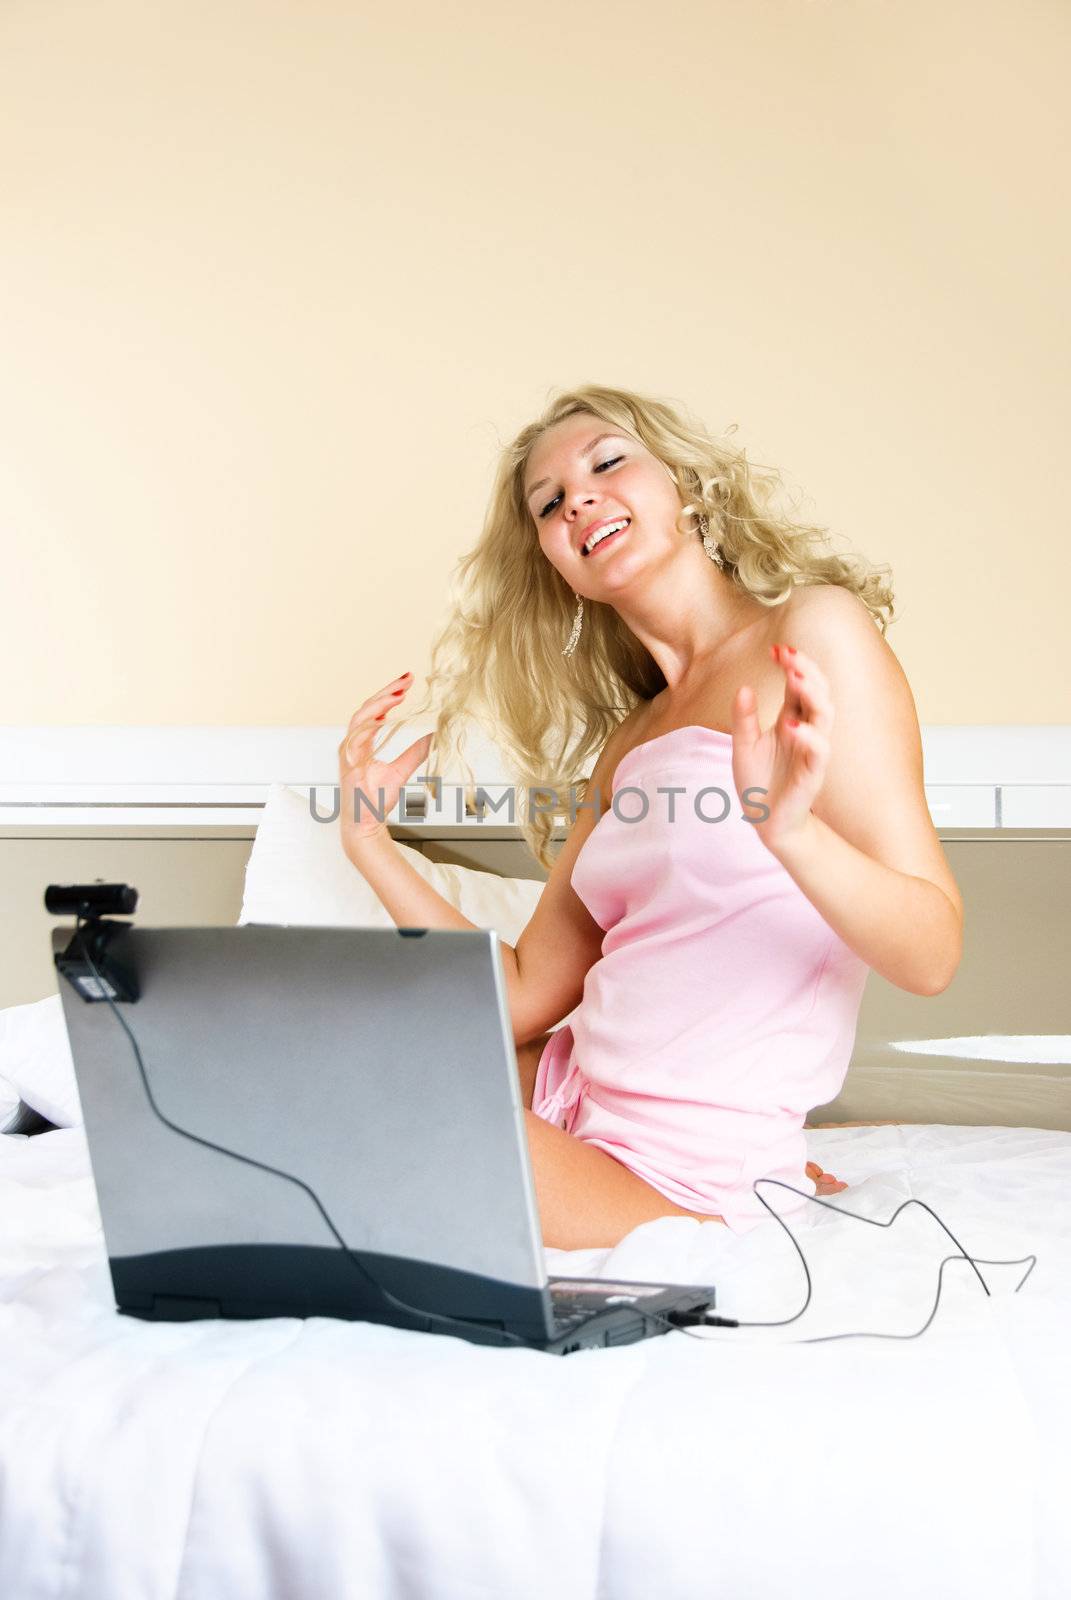 girl communicating using a web camera by lanak